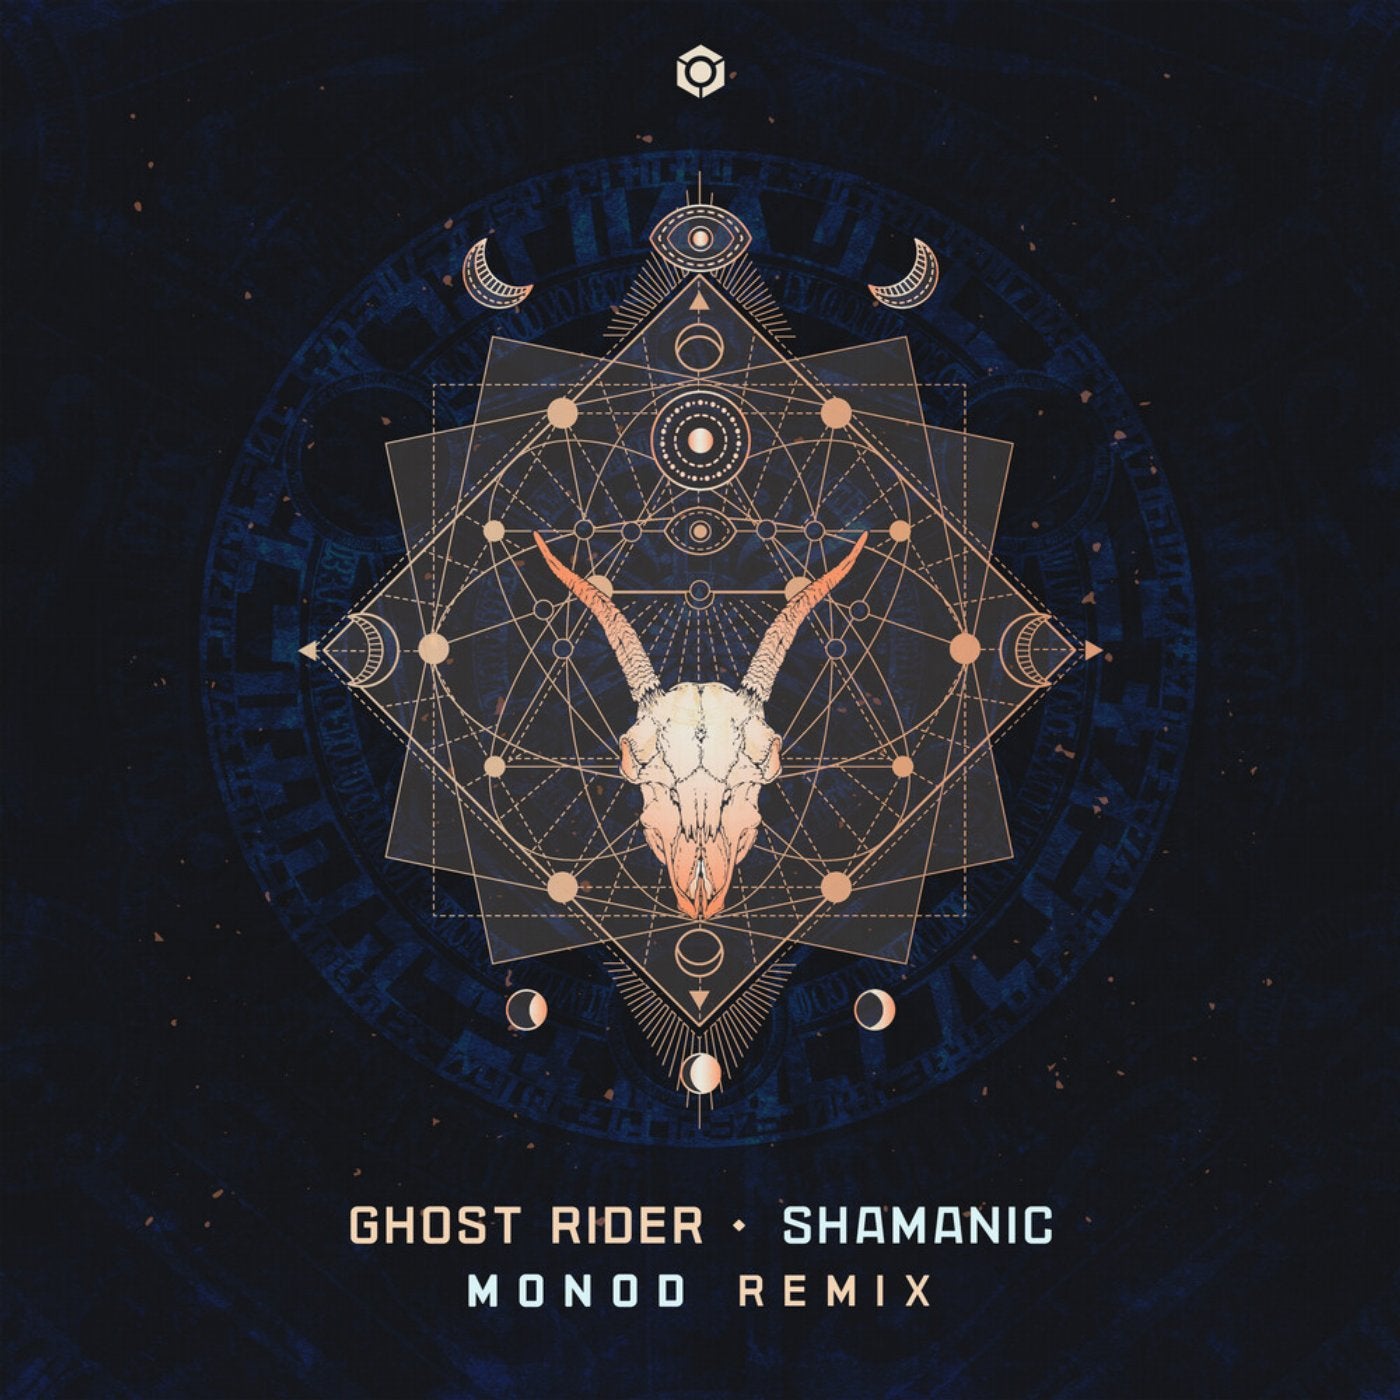 Shamanic (Monod Remix)